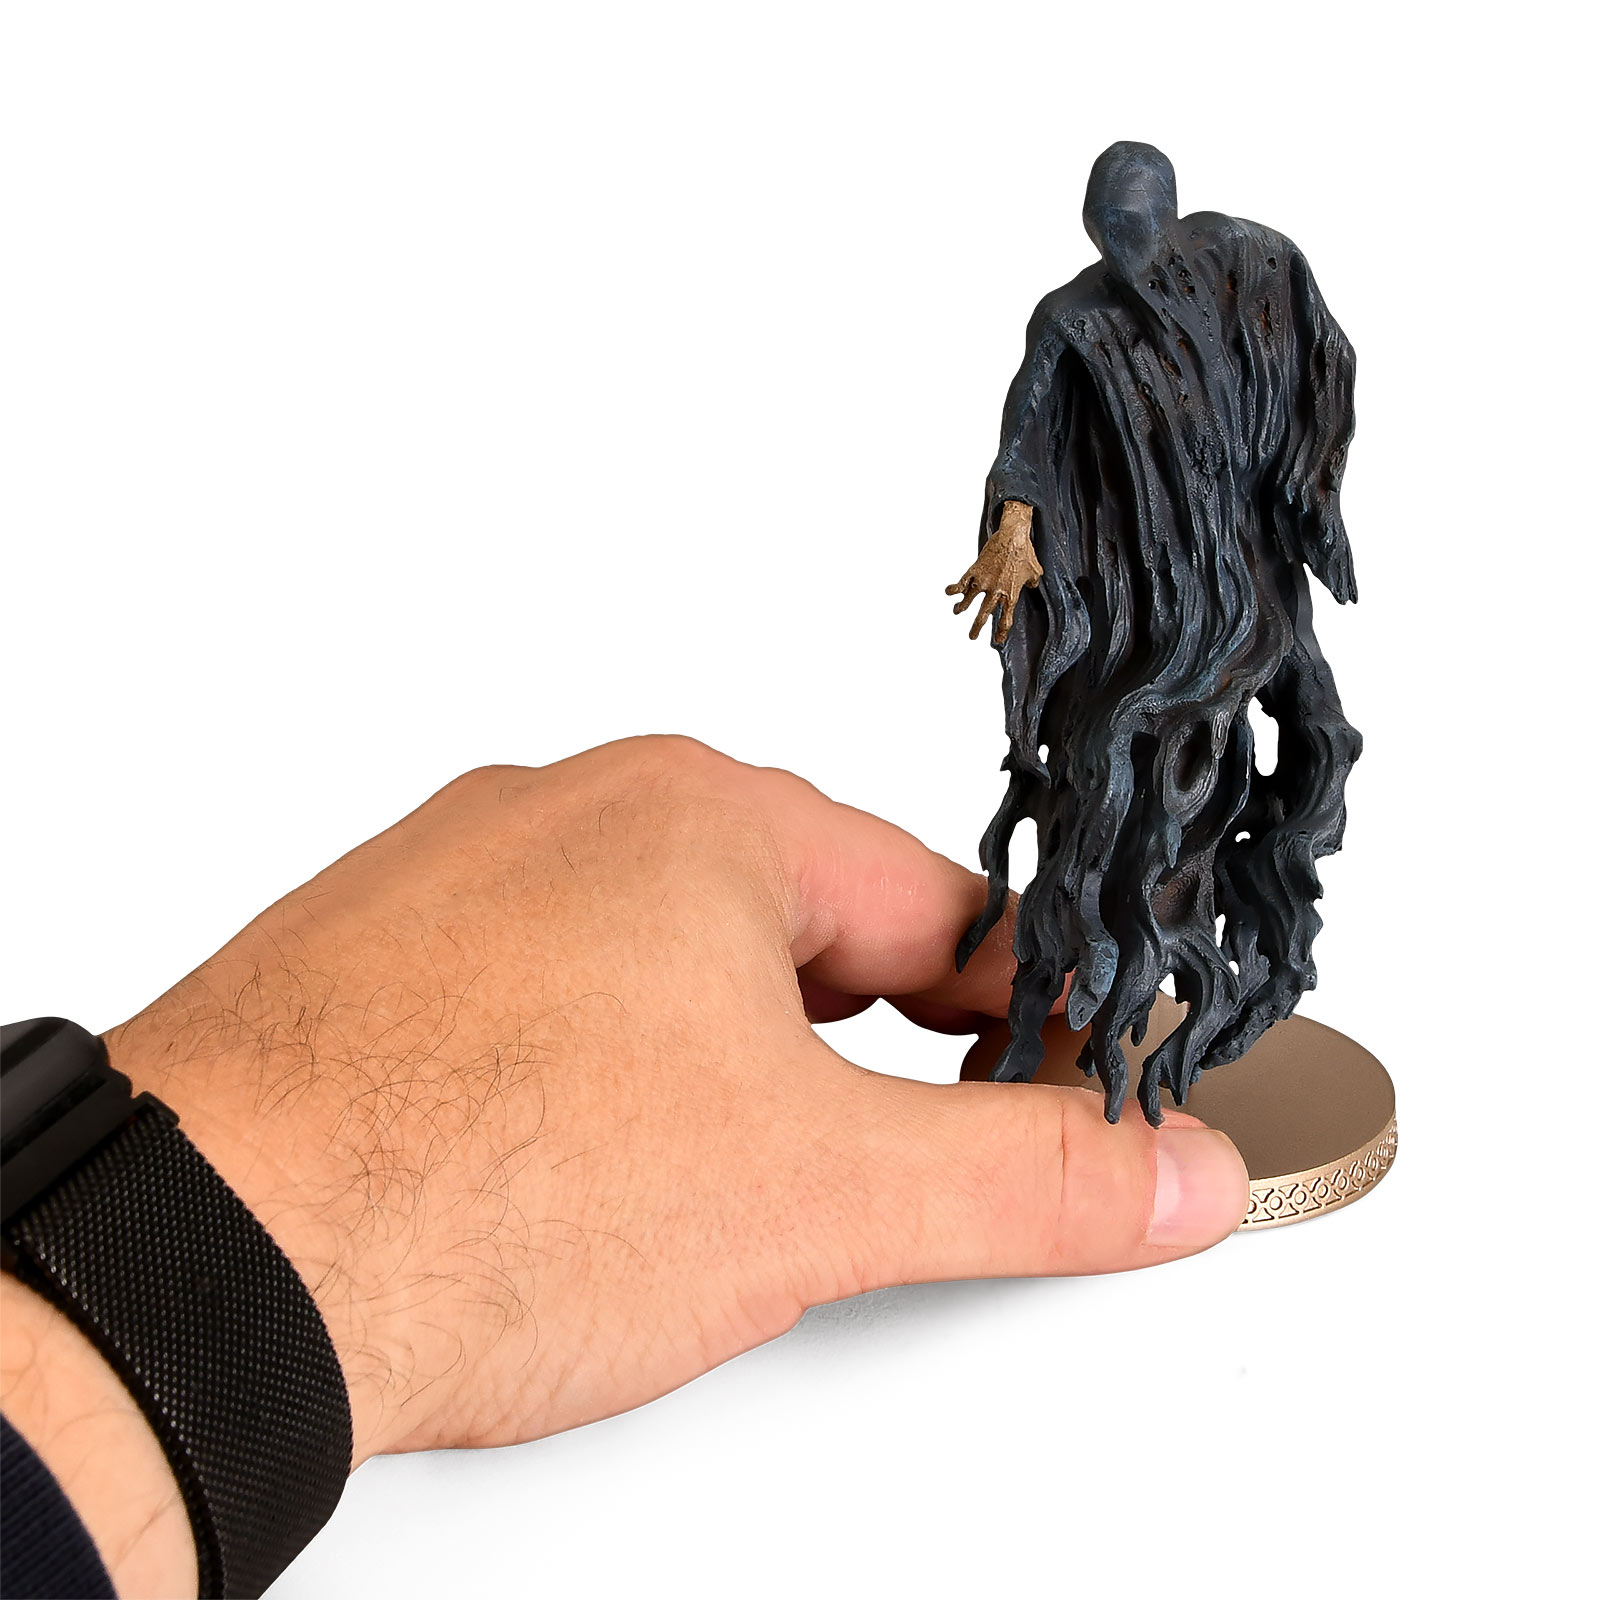 Dementor Hero Collector Figure 13 cm - Harry Potter